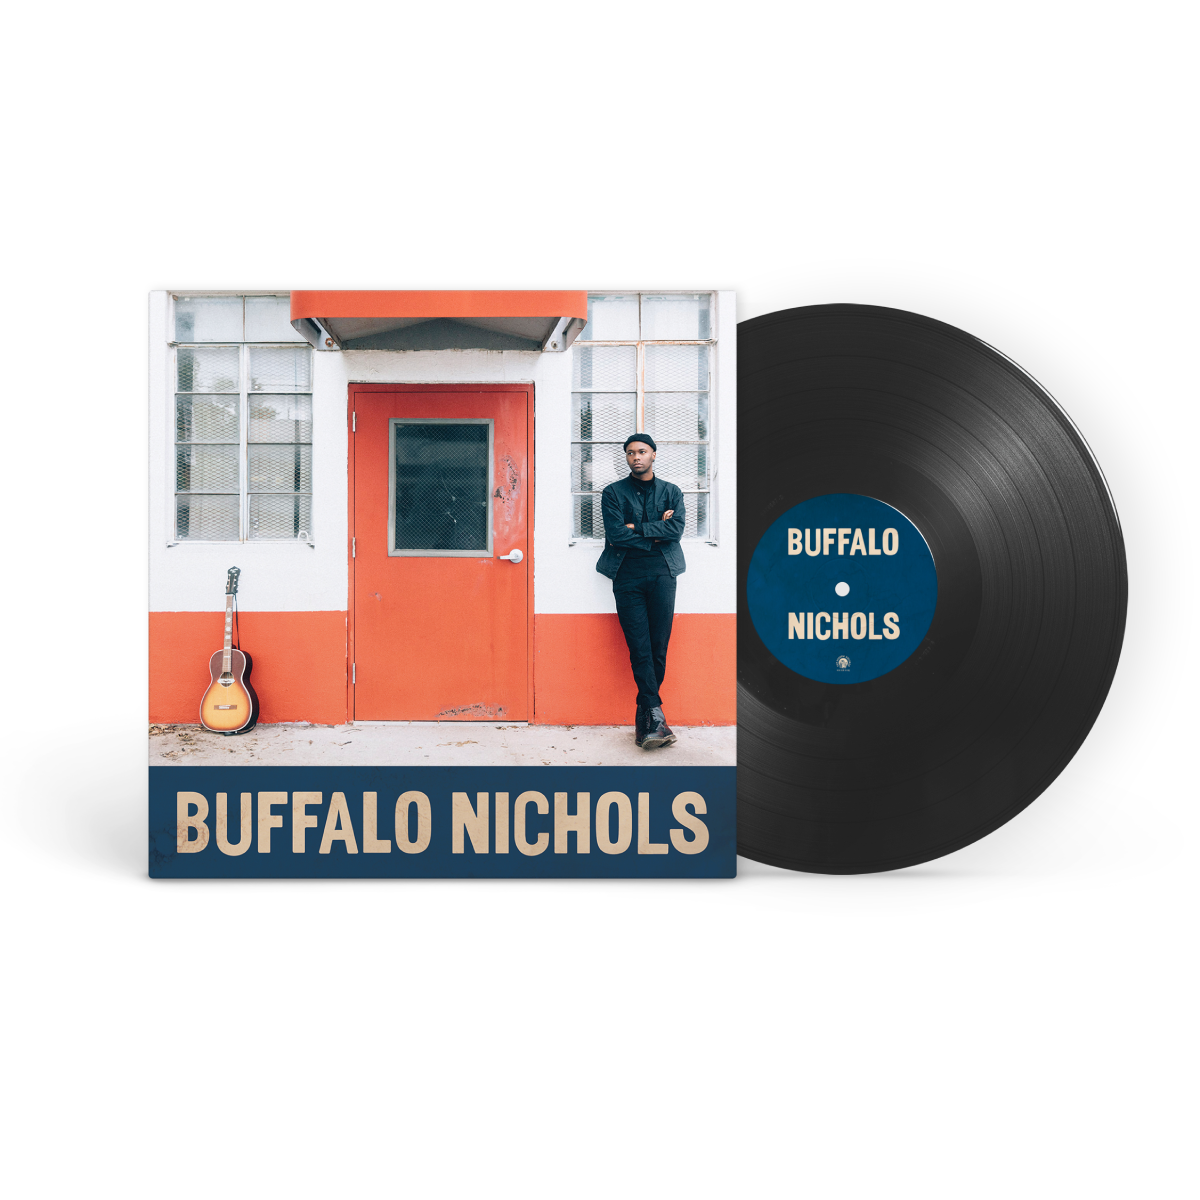 Buffalo Nichols